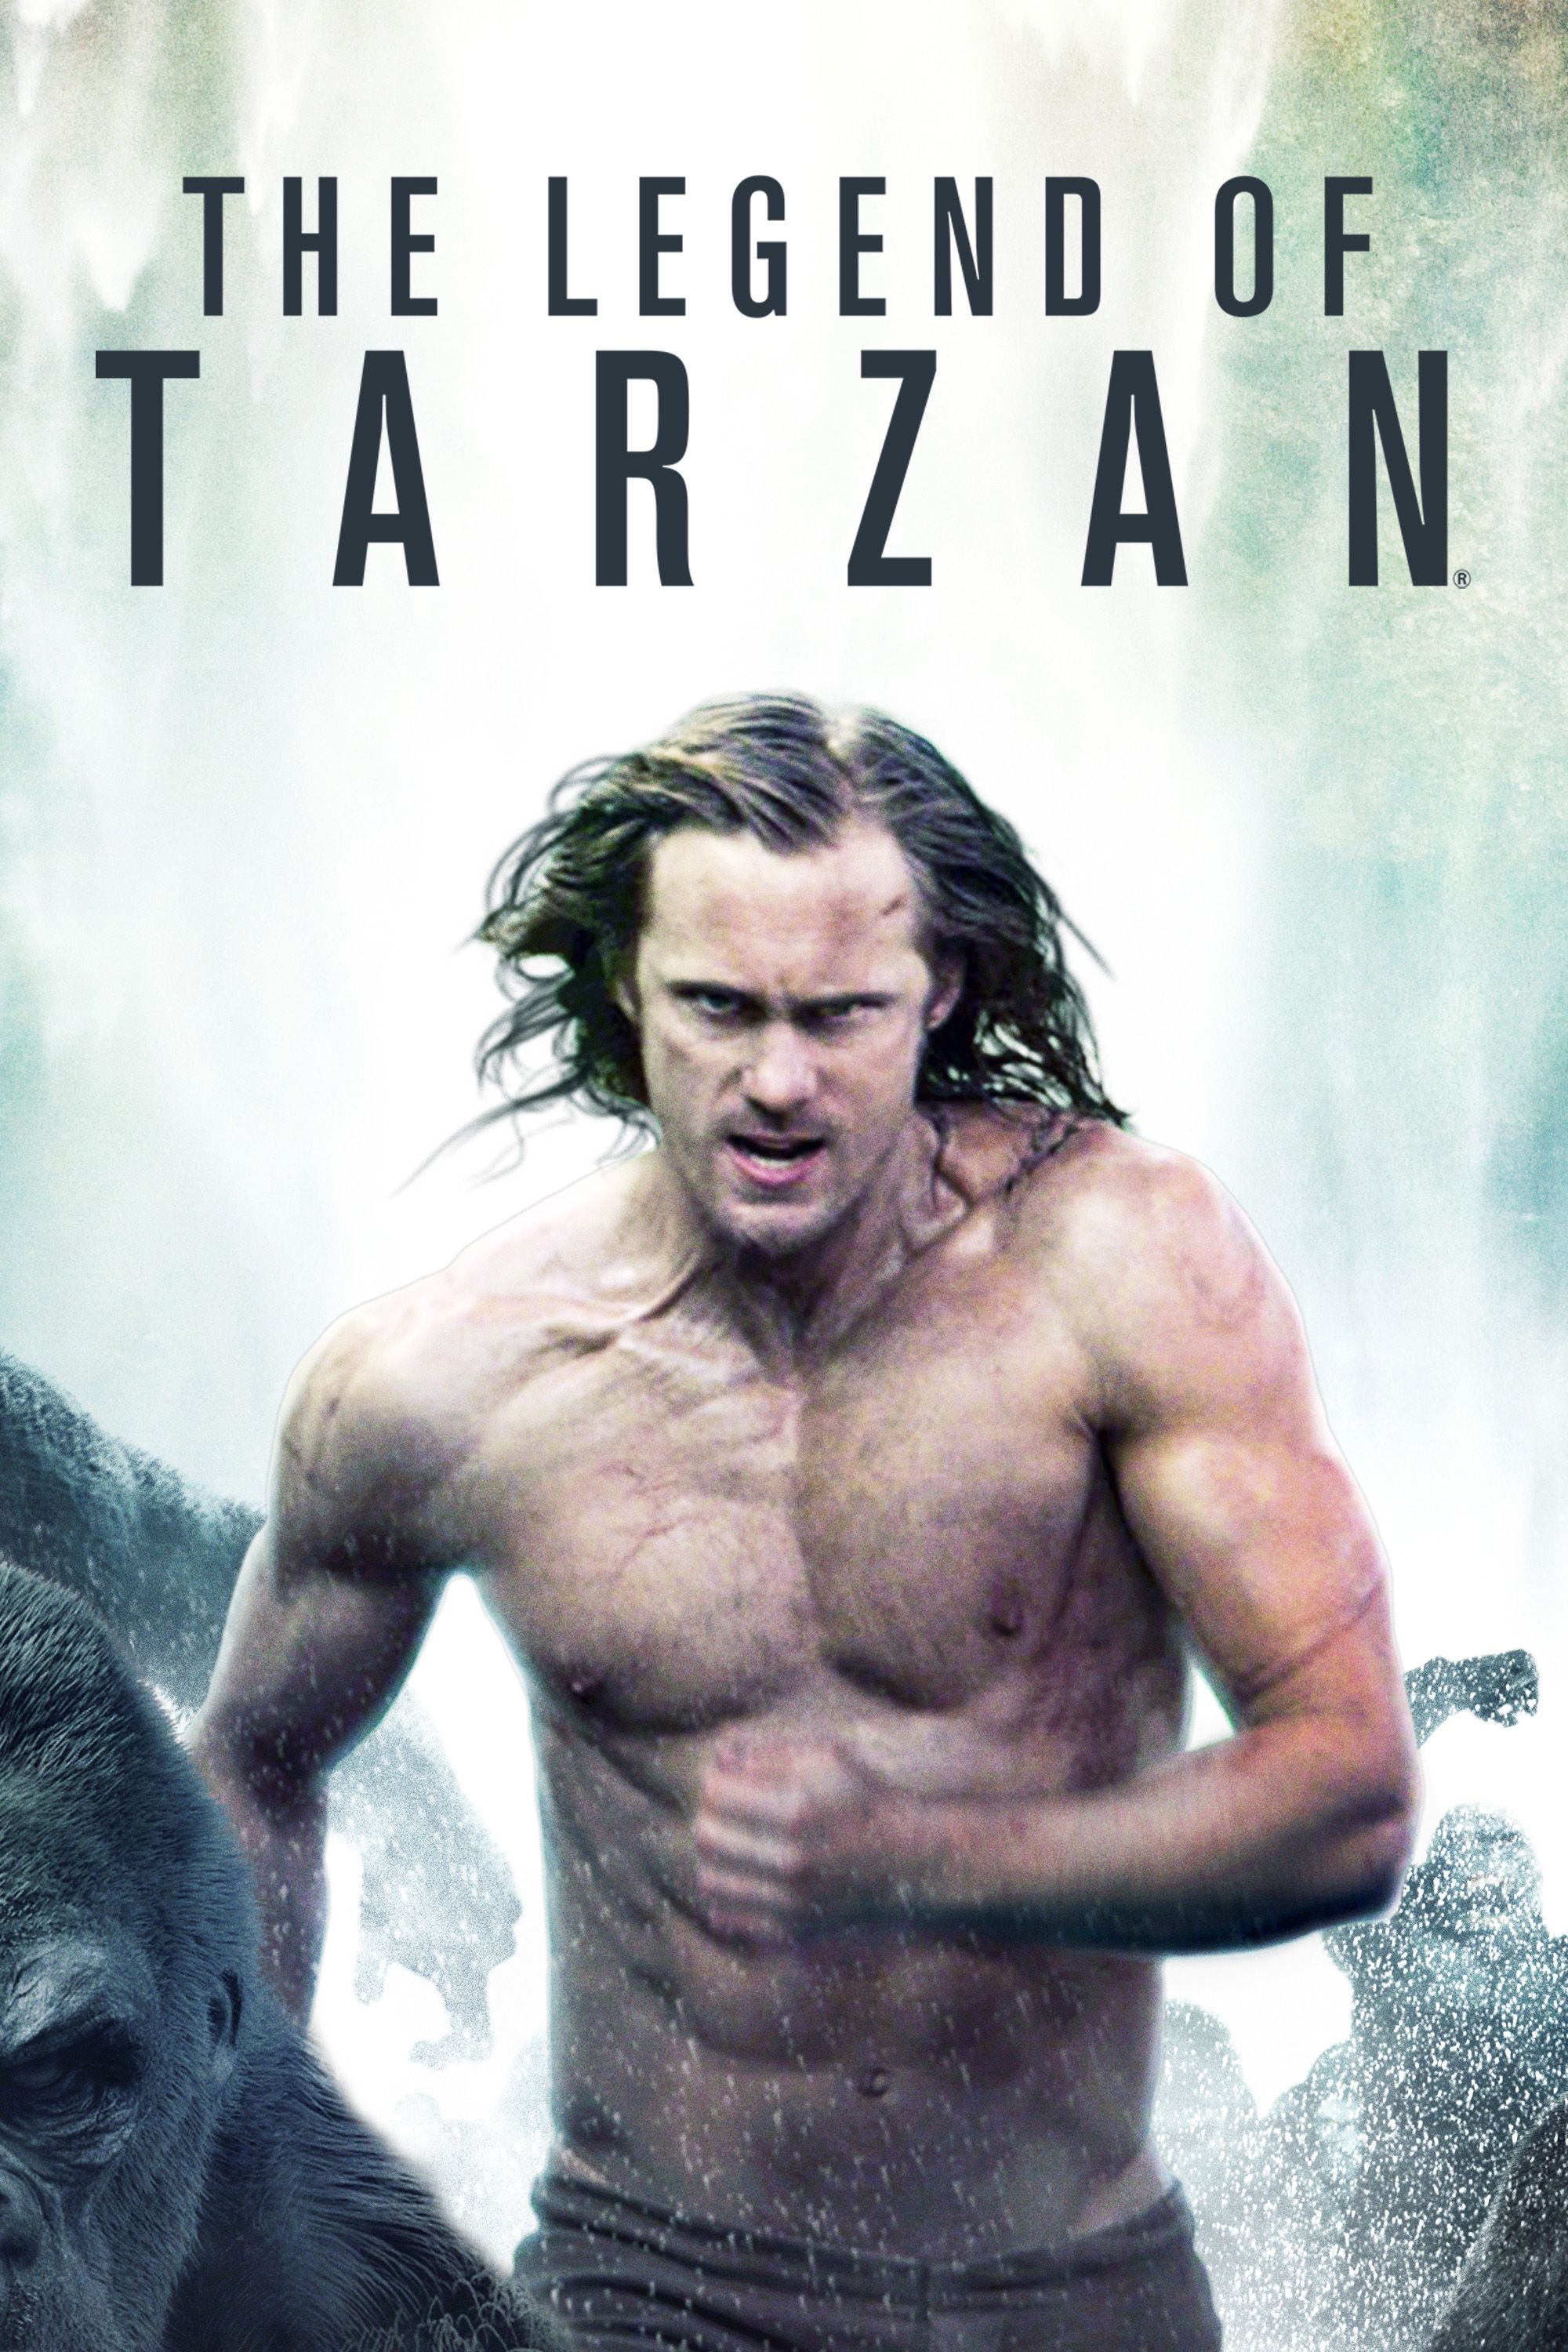 ashis kumar sahu recommends Tarzan Full Movie Free